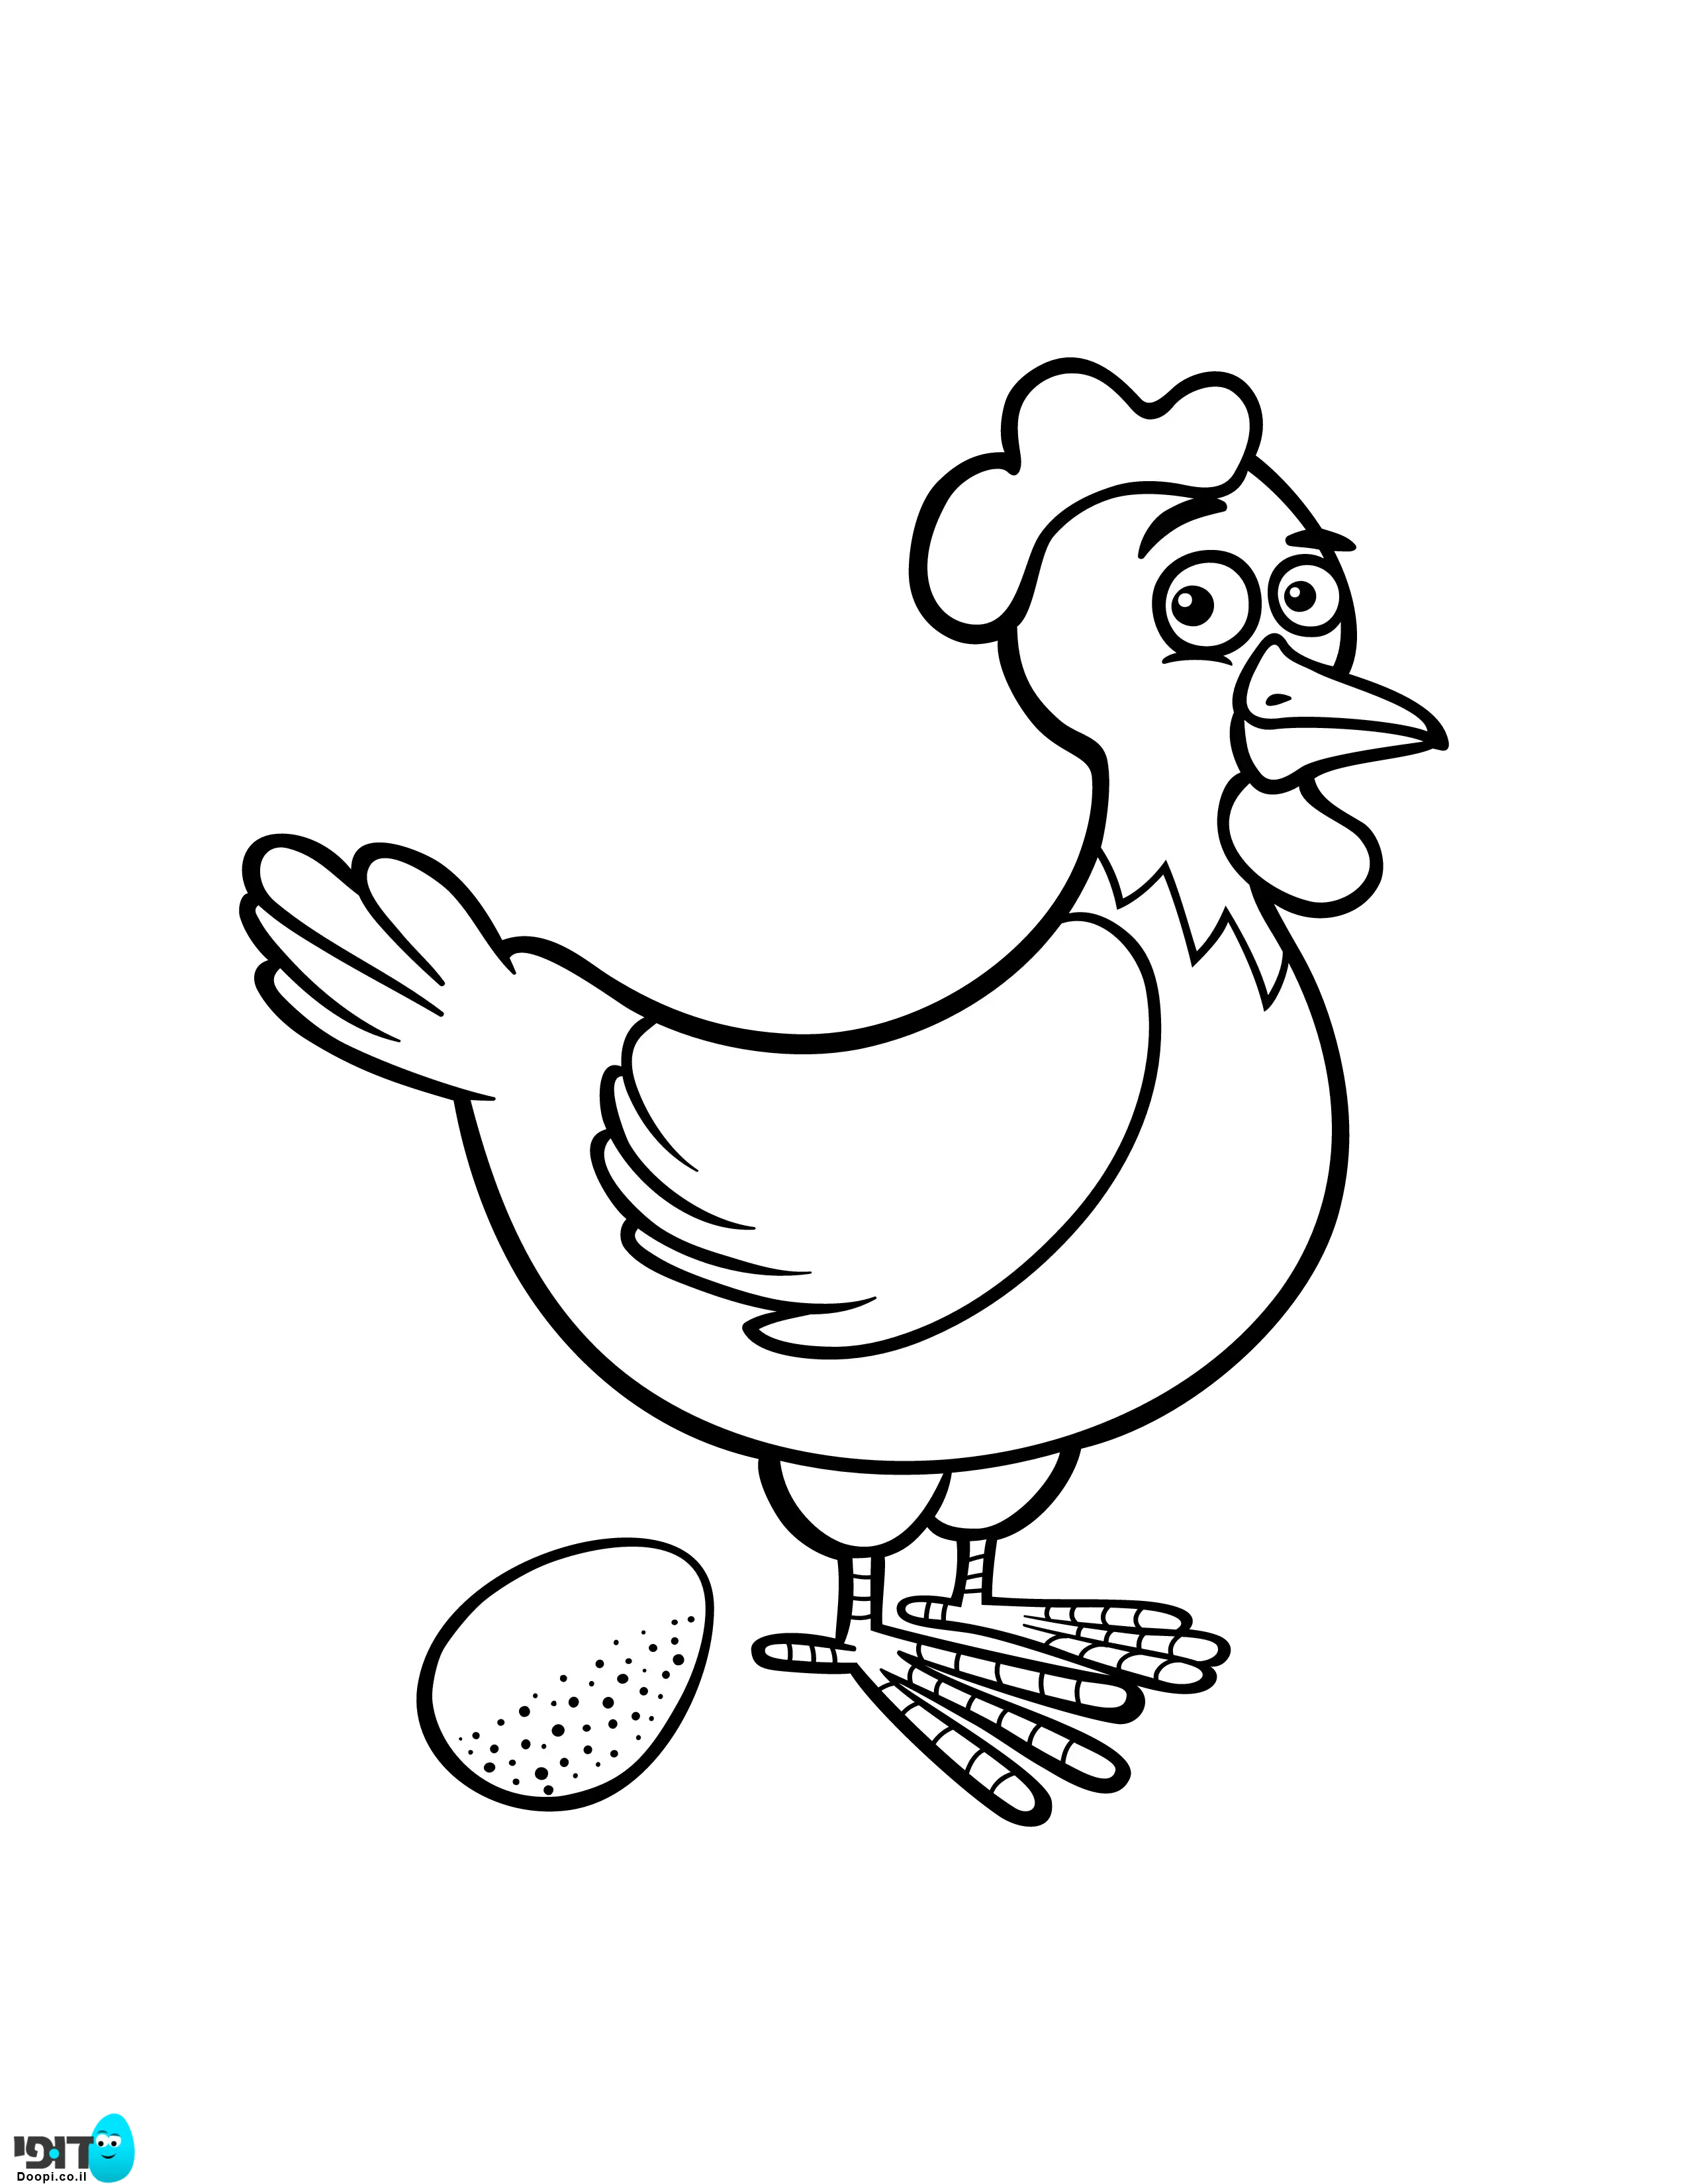 Раскраска курочки для детей 3 4 лет. Курица раскраска. Курица раскраска для детей. Курочка раскраска для детей. Раскраска курица с яйцами.